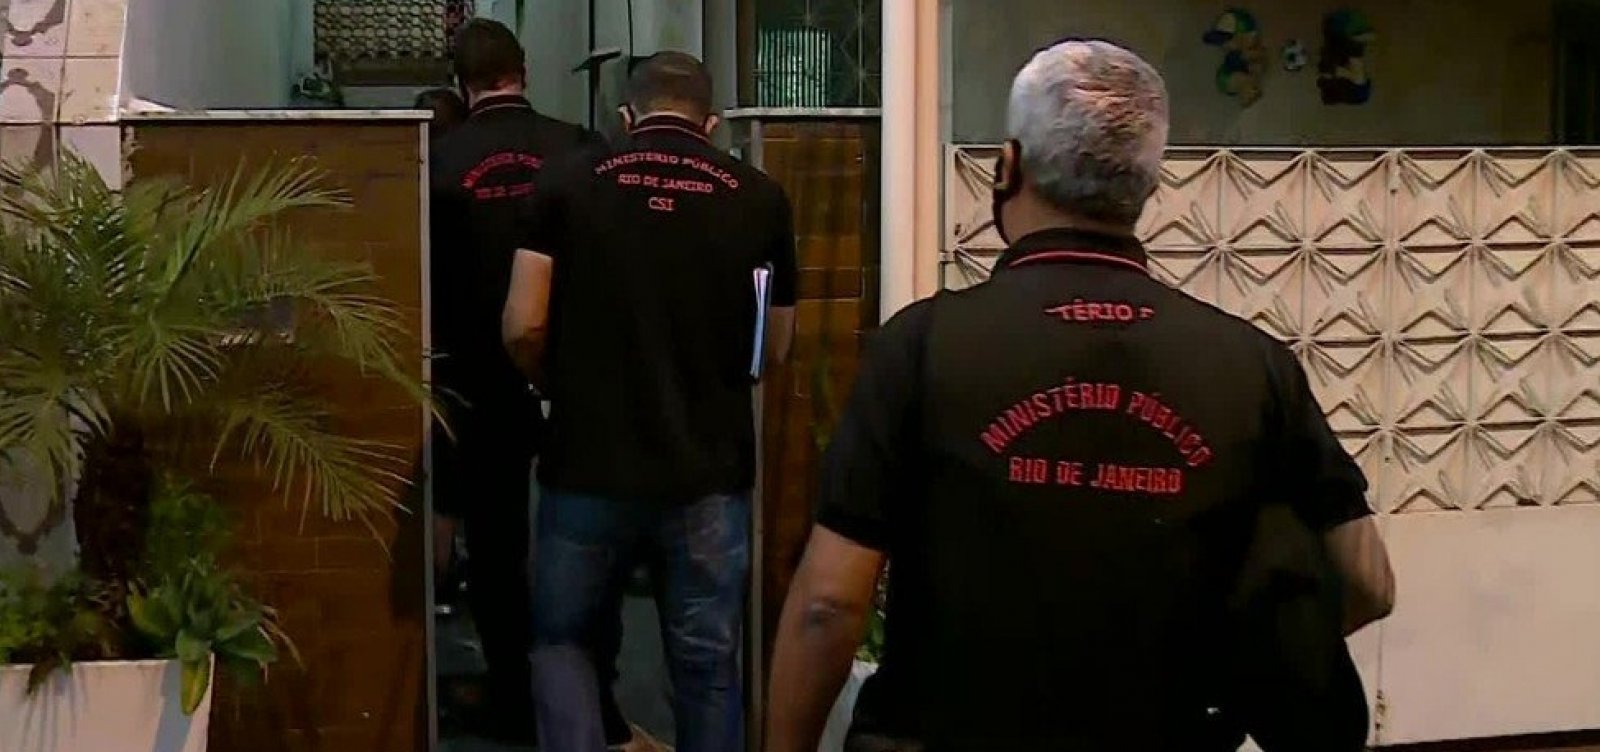 Polícia do Rio cumpre mandado de busca e apreensão em casa ligada a Jair Bolsonaro